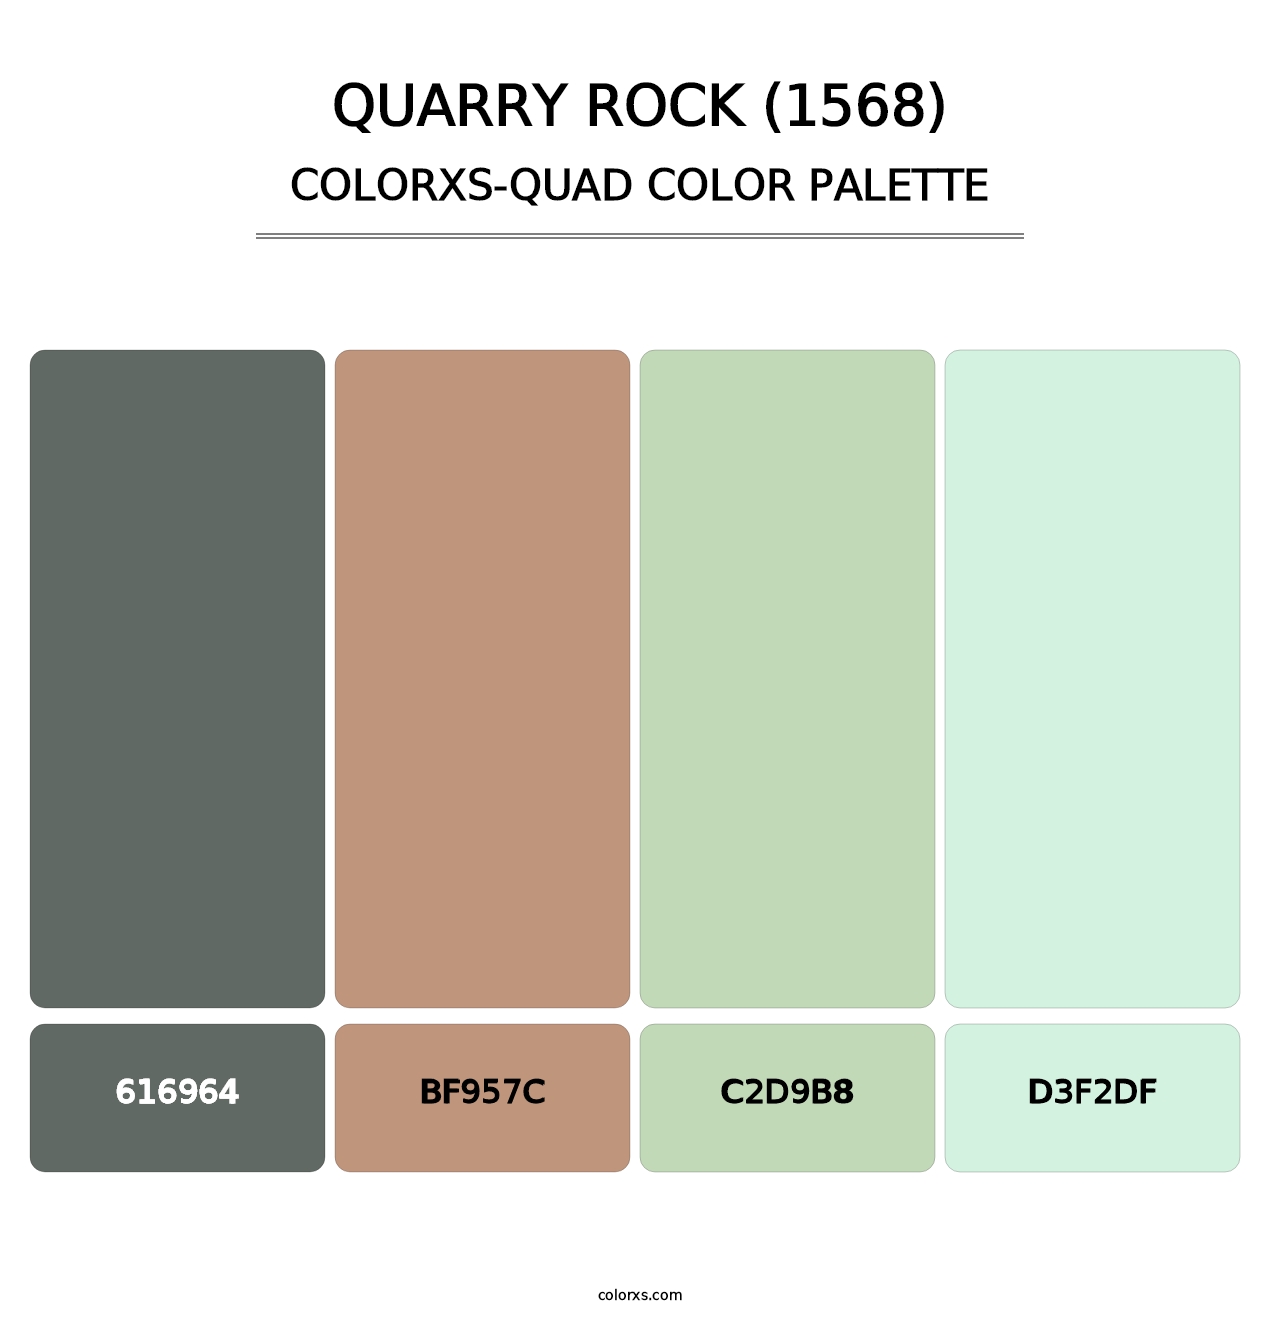 Quarry Rock (1568) - Colorxs Quad Palette